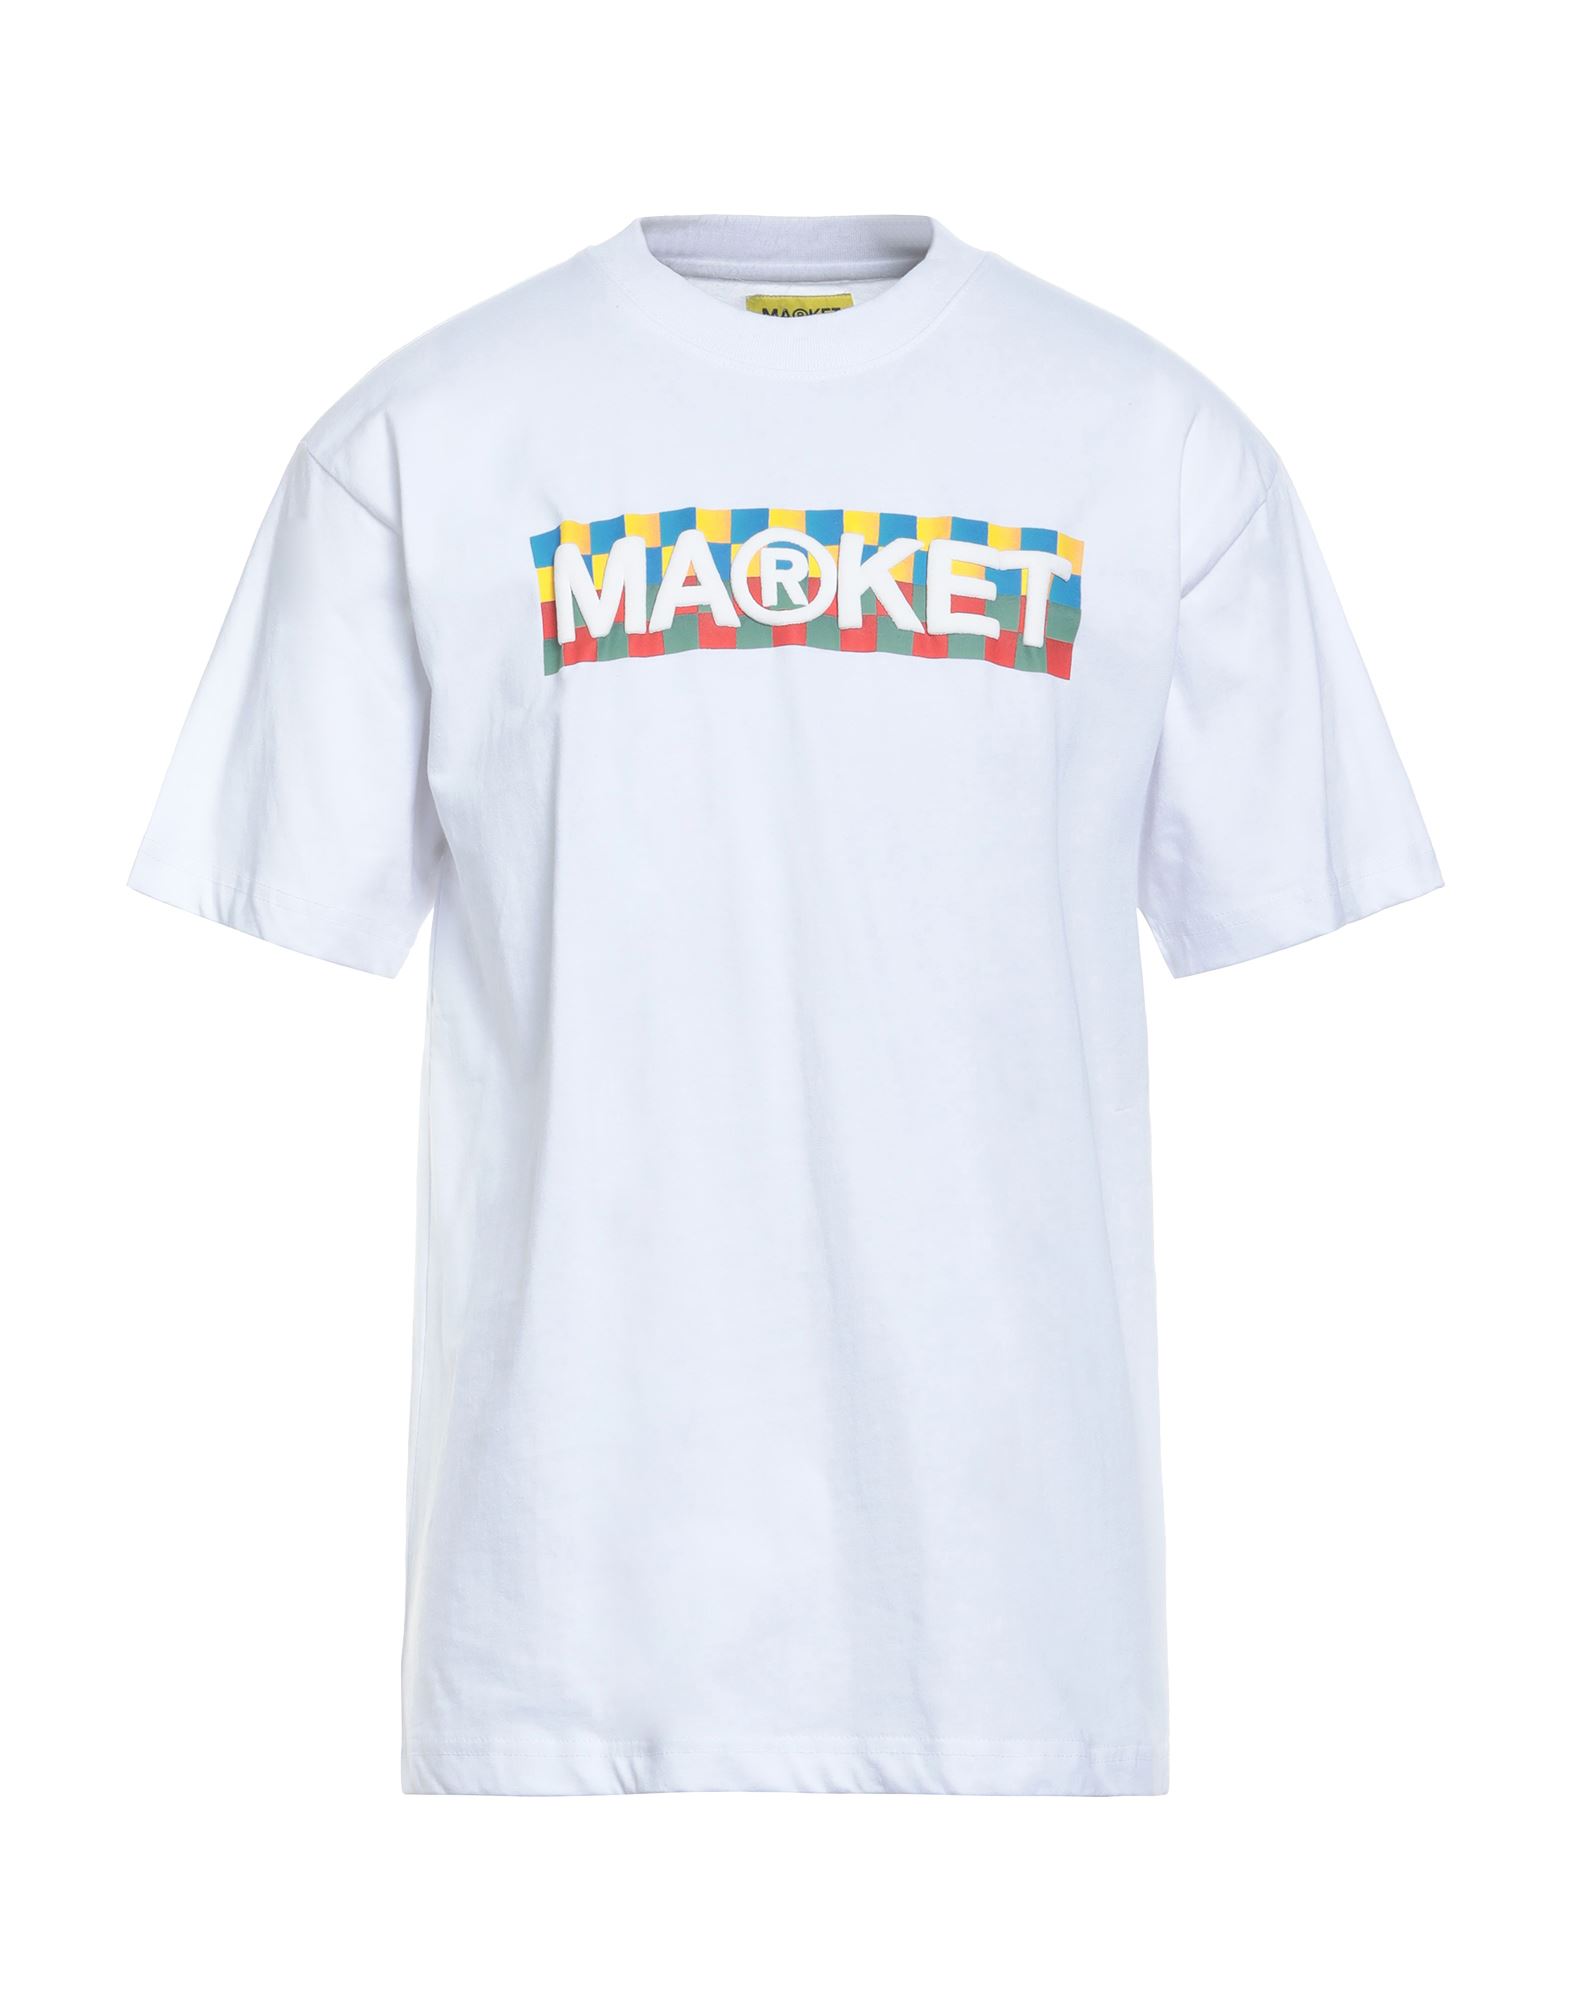 MARKET T-shirts Herren Weiß von MARKET